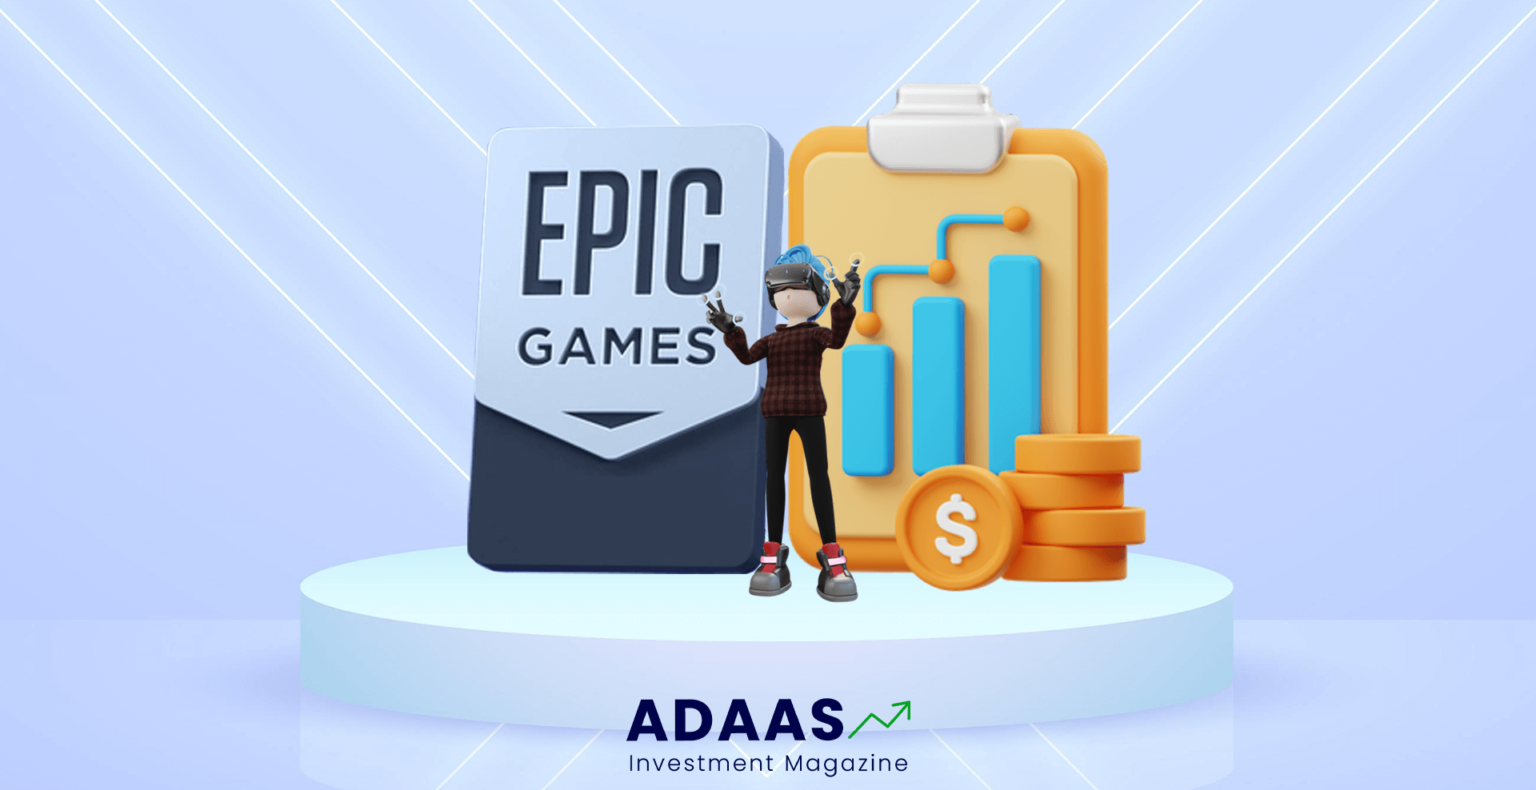 متاورس اپیک گیمز – بررسی سرمایه گذاری Epic Games در متاورس